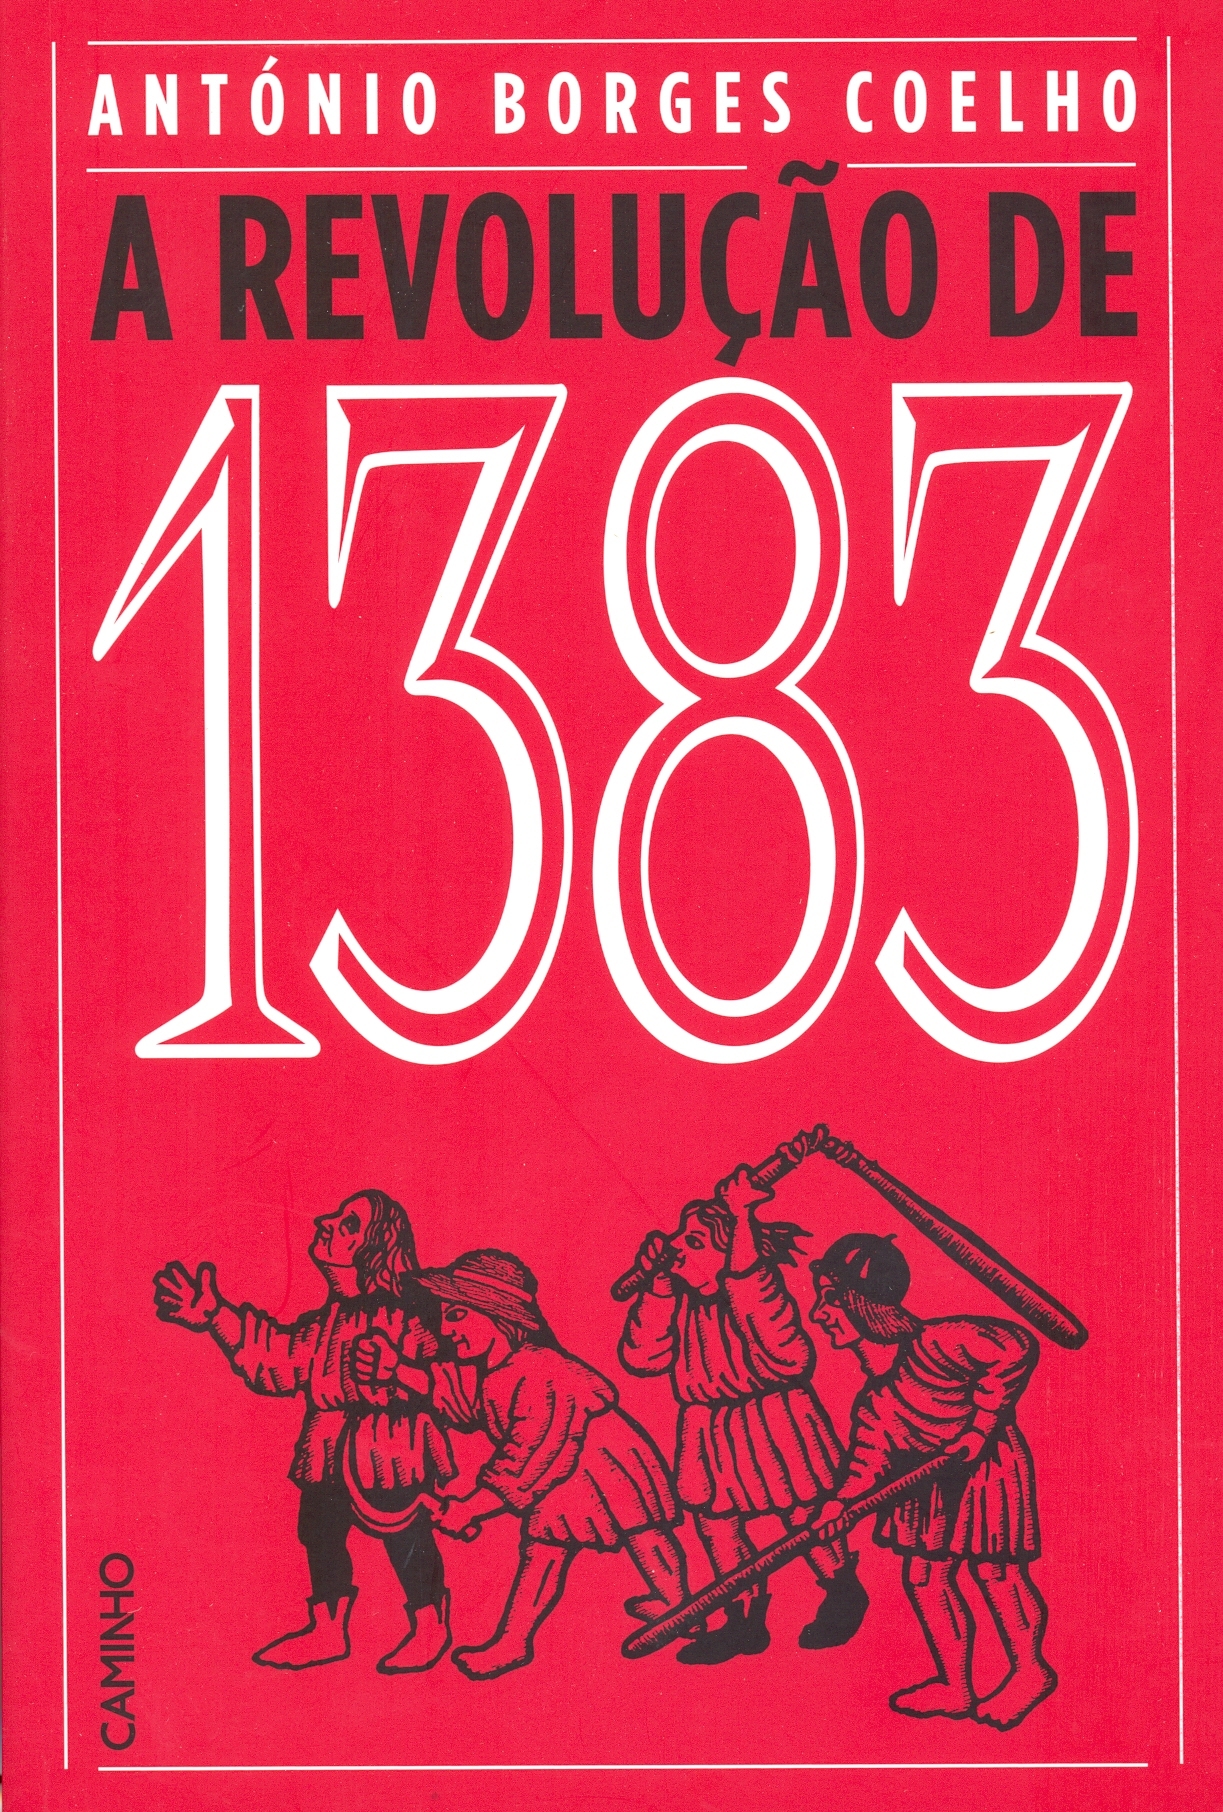 António Borges Coelho - A Revolução de 1383